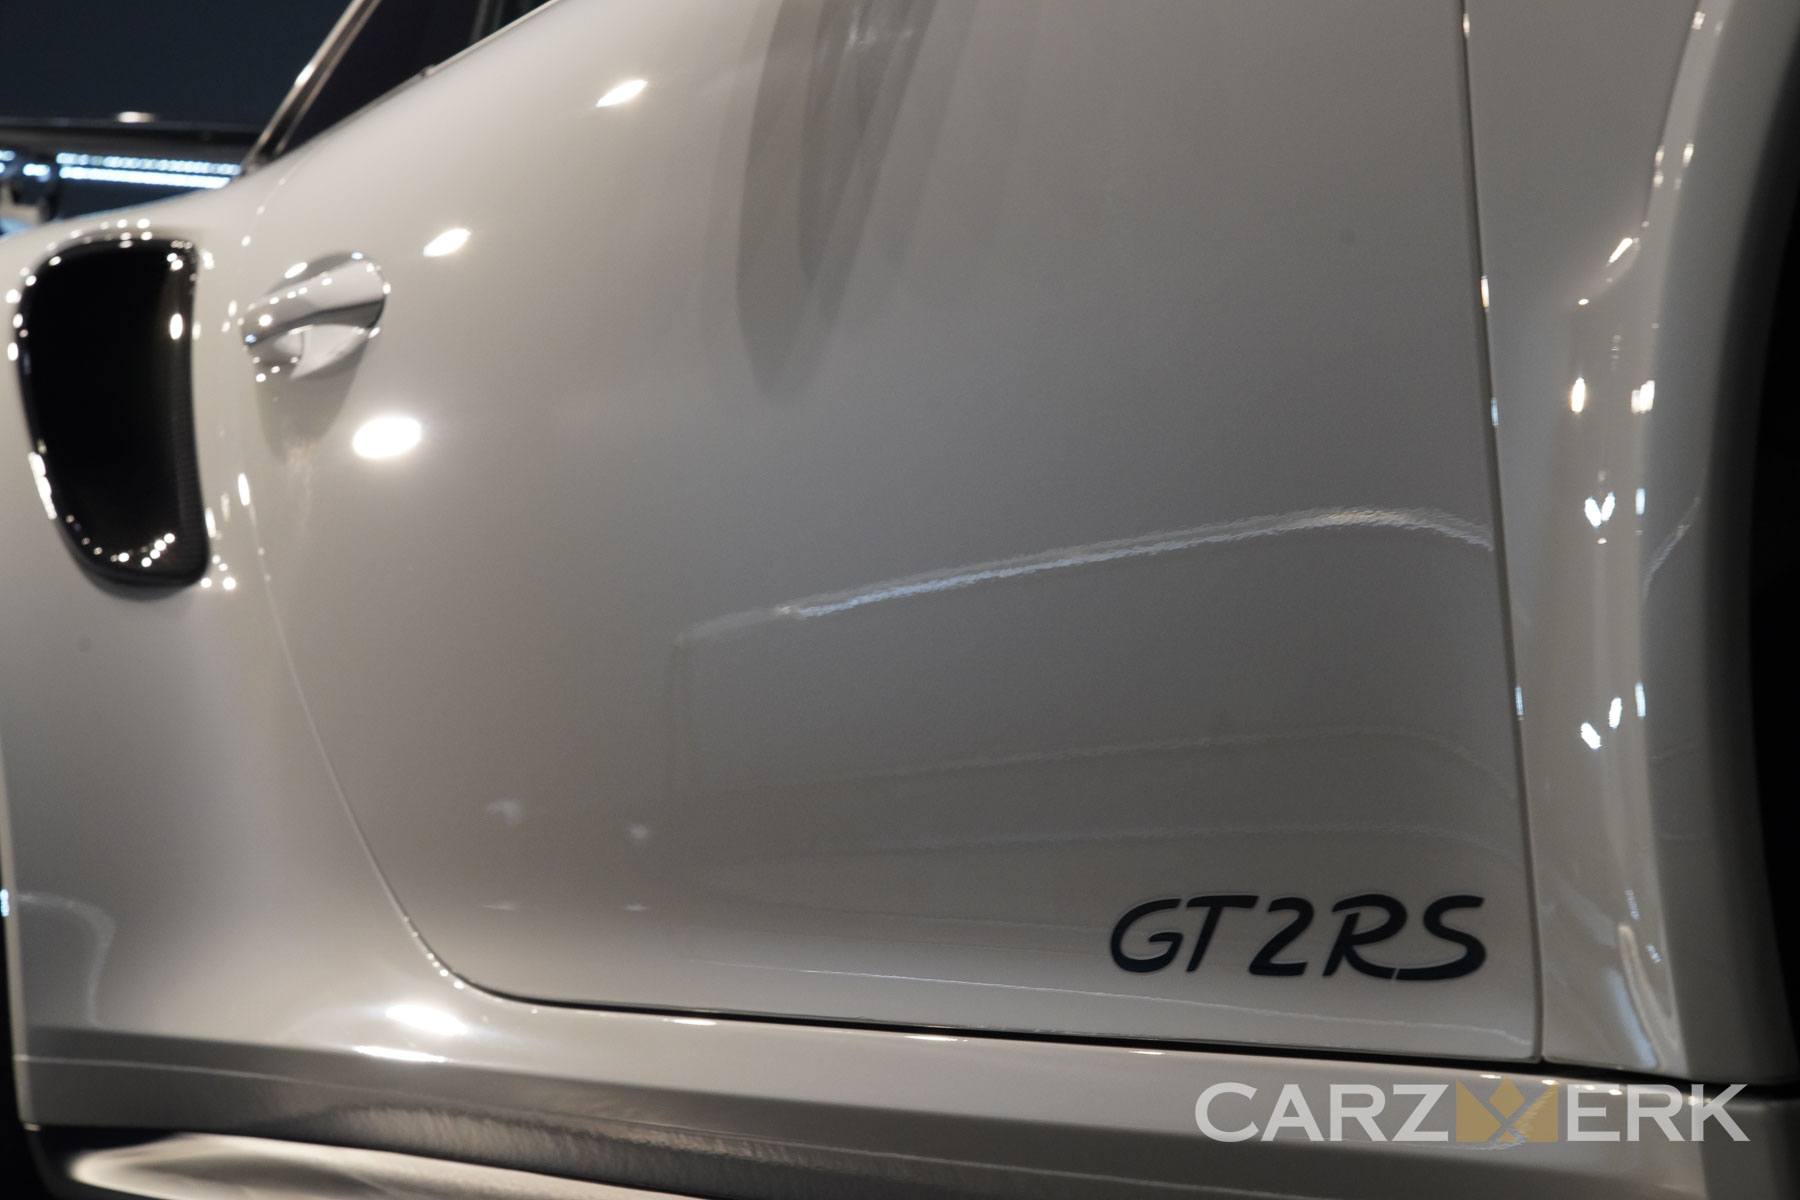 2018 Porsche GT2R2018 Porsche GT2RS - White C9A - Lower Door - GT2RS Decal